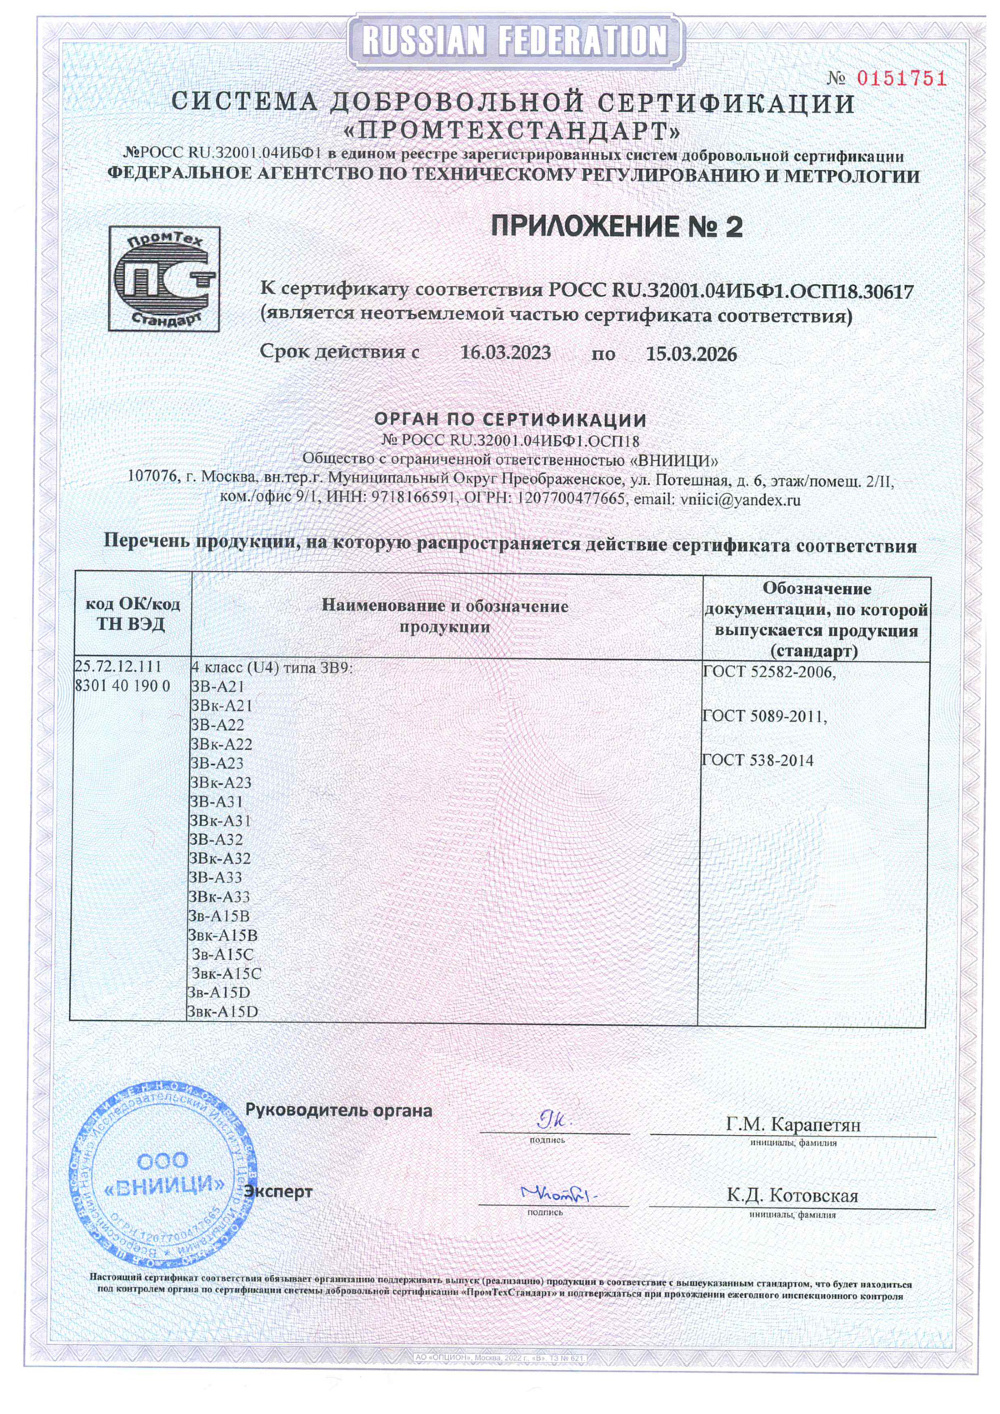 сертификат соответствия для замка А20 стр3